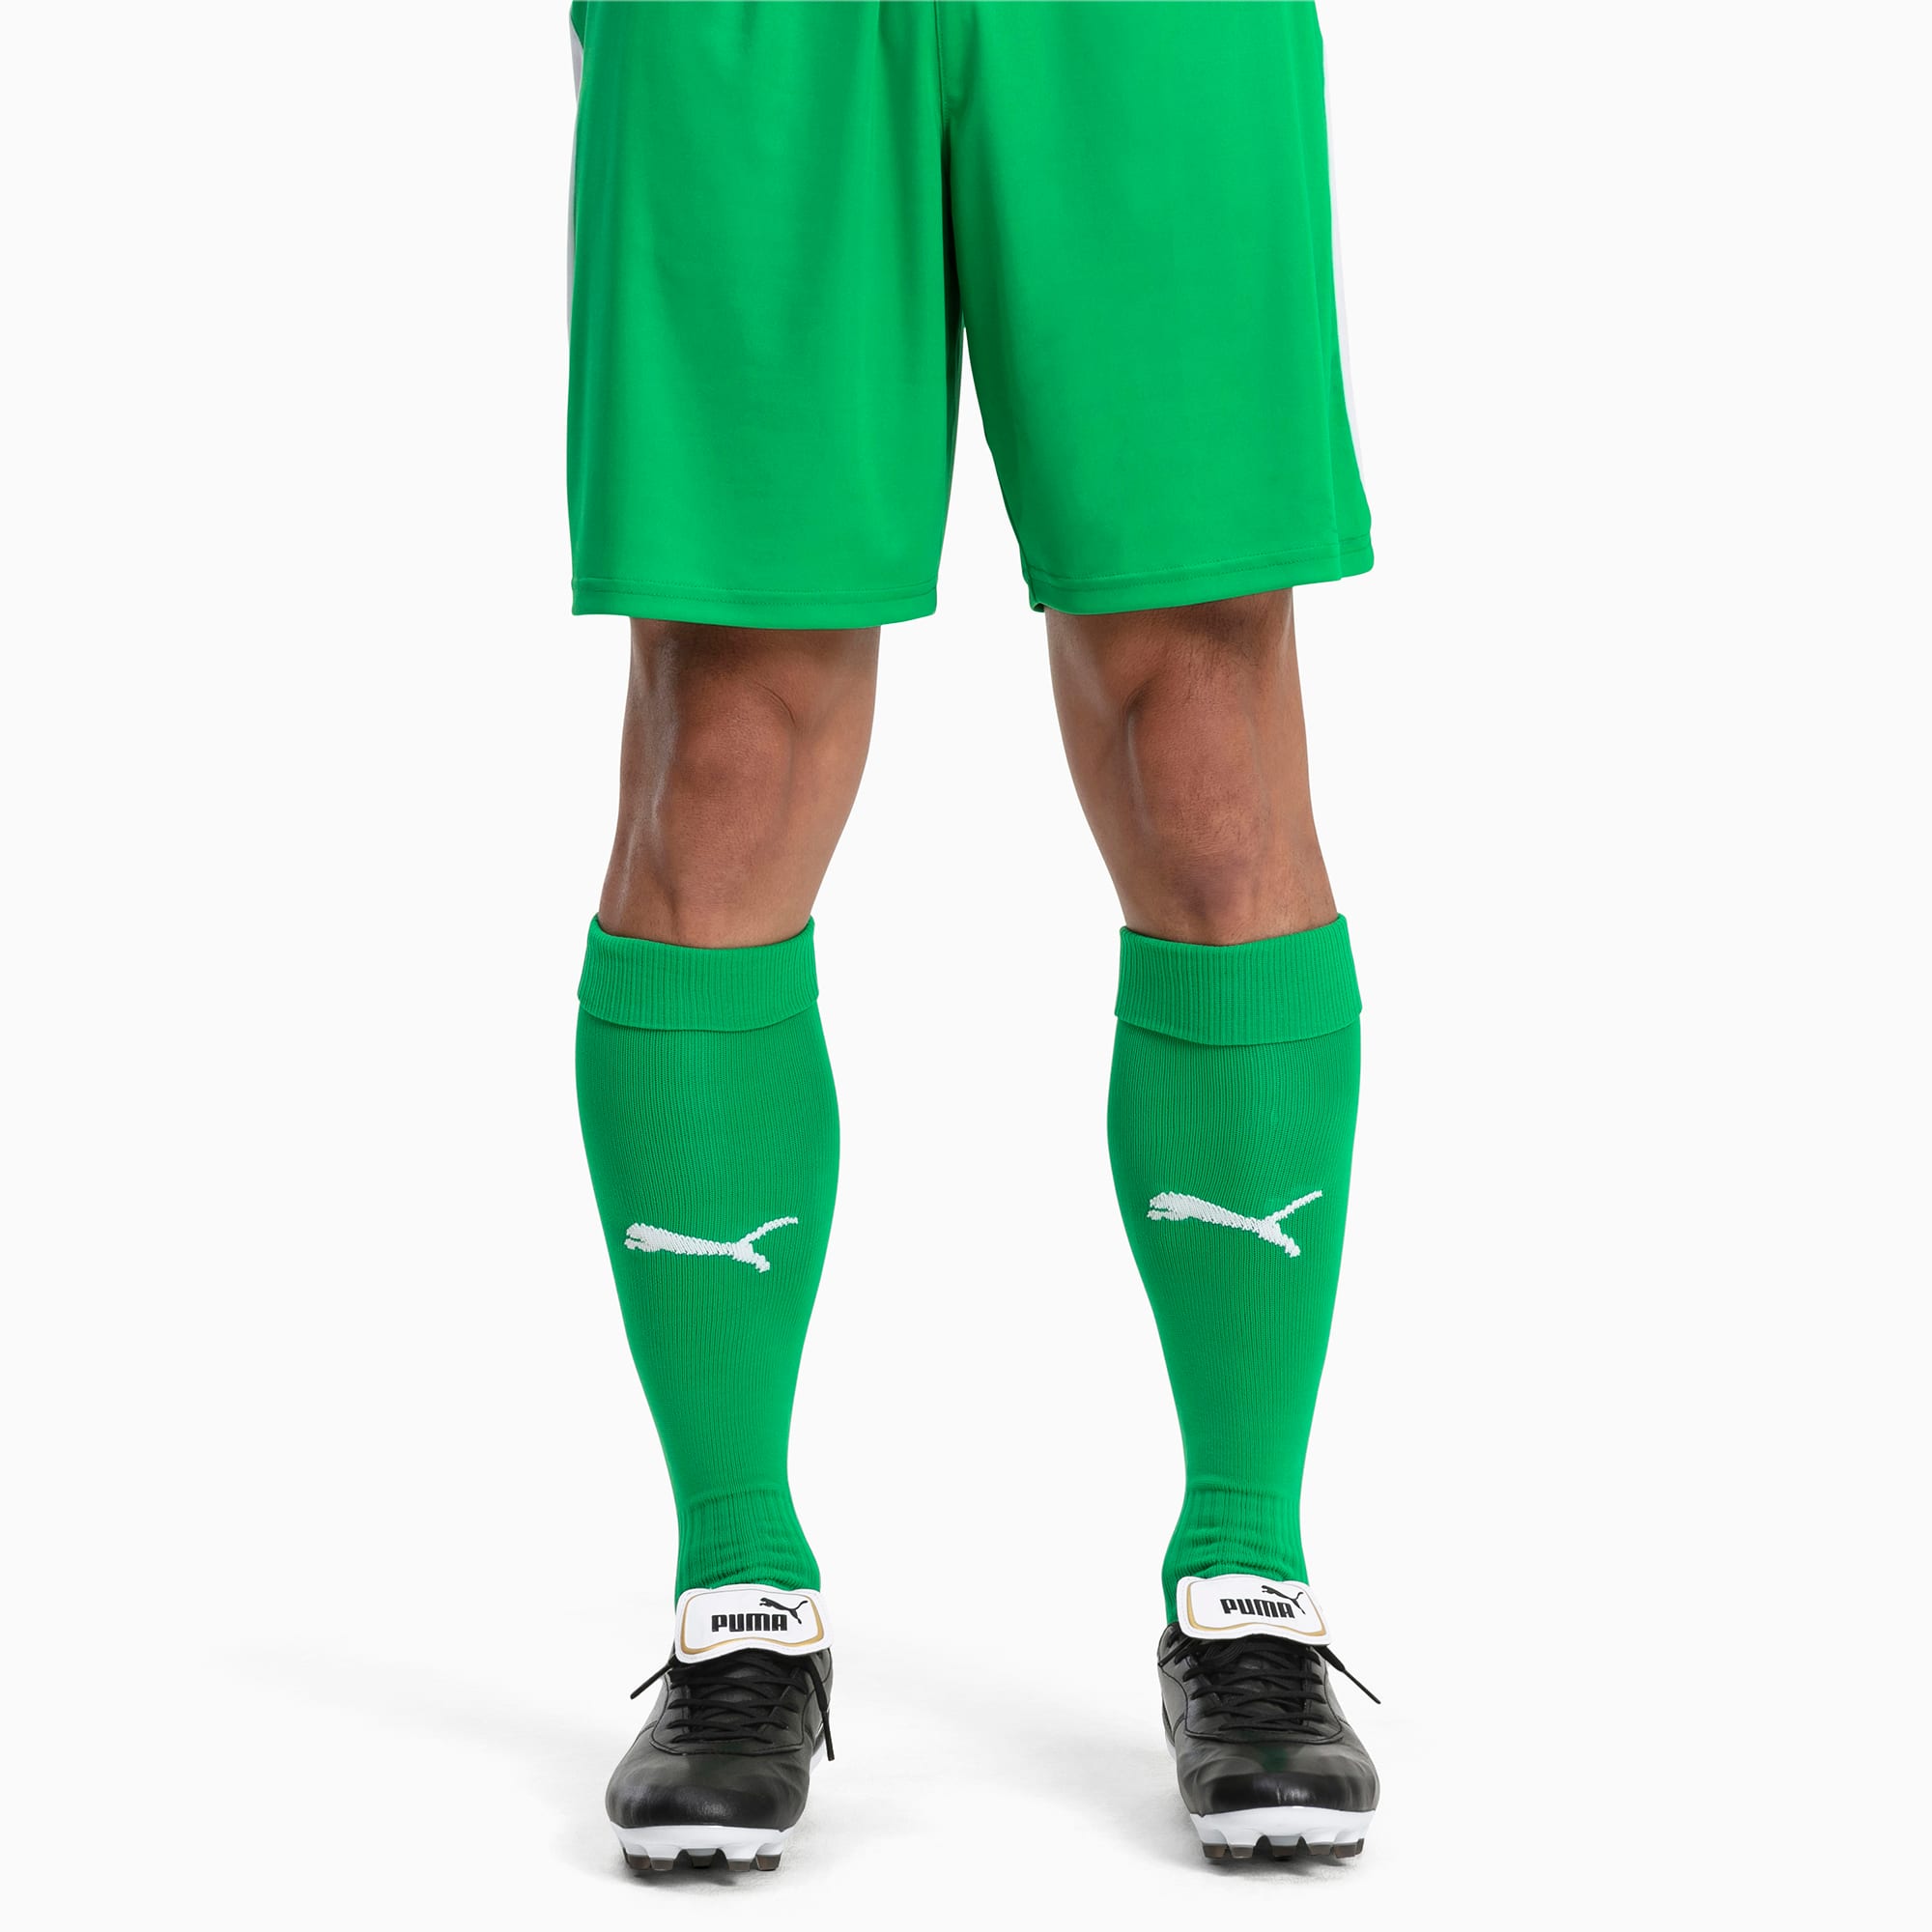 Image of PUMA Fußball Herren LIGA Core Socken | Mit Aucun | Grün/Weiß | Größe: 31-34